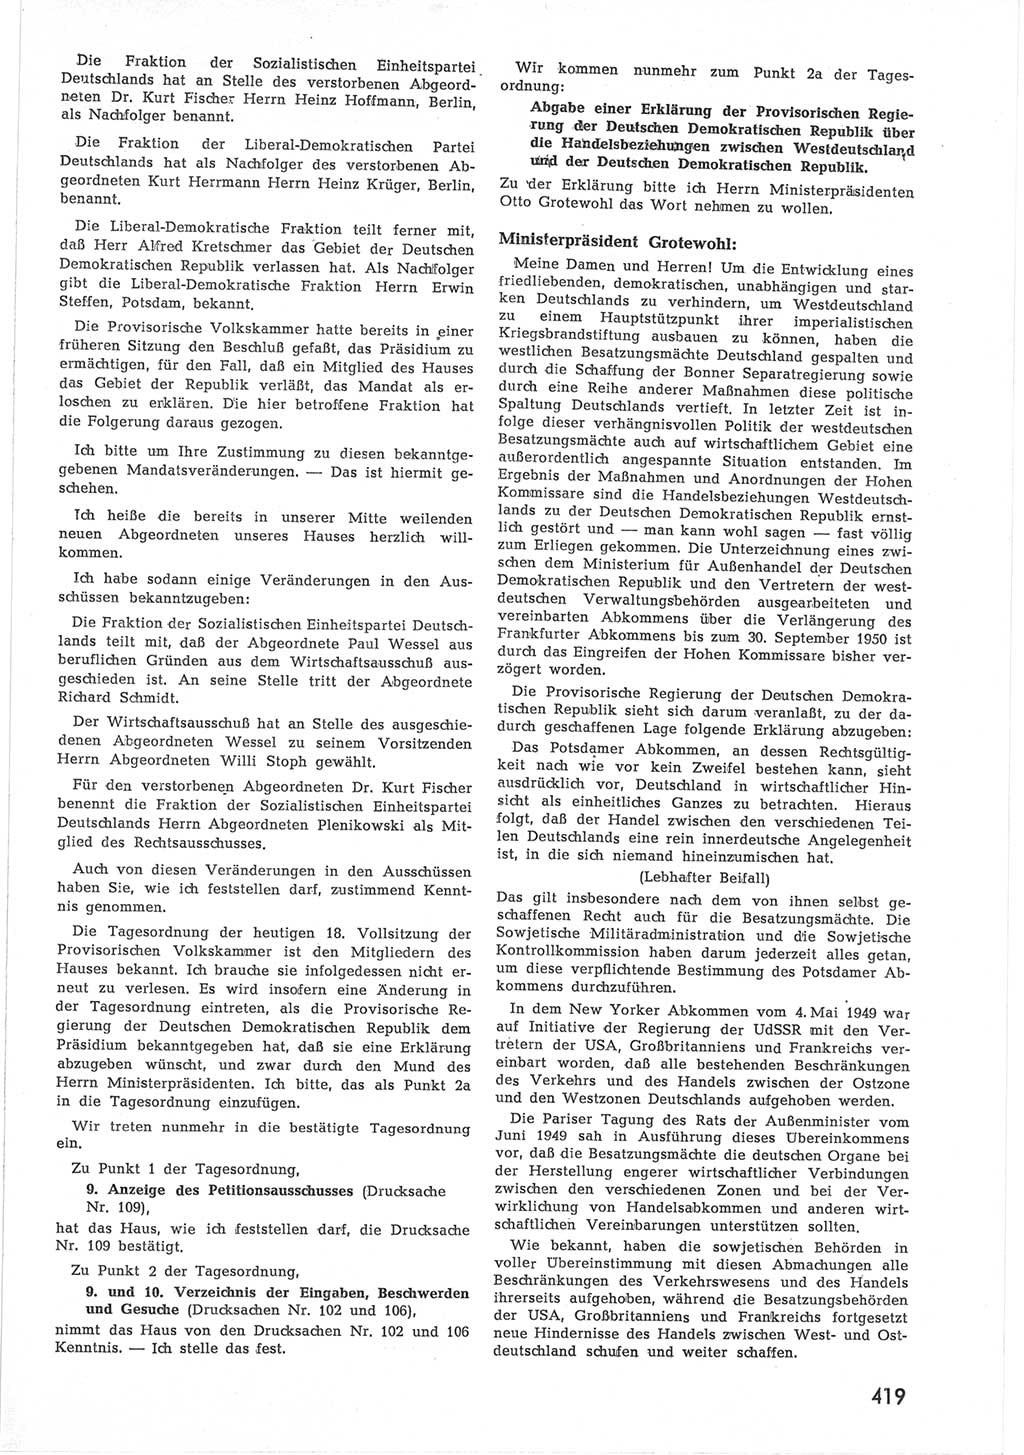 Provisorische Volkskammer (VK) der Deutschen Demokratischen Republik (DDR) 1949-1950, Dokument 437 (Prov. VK DDR 1949-1950, Dok. 437)